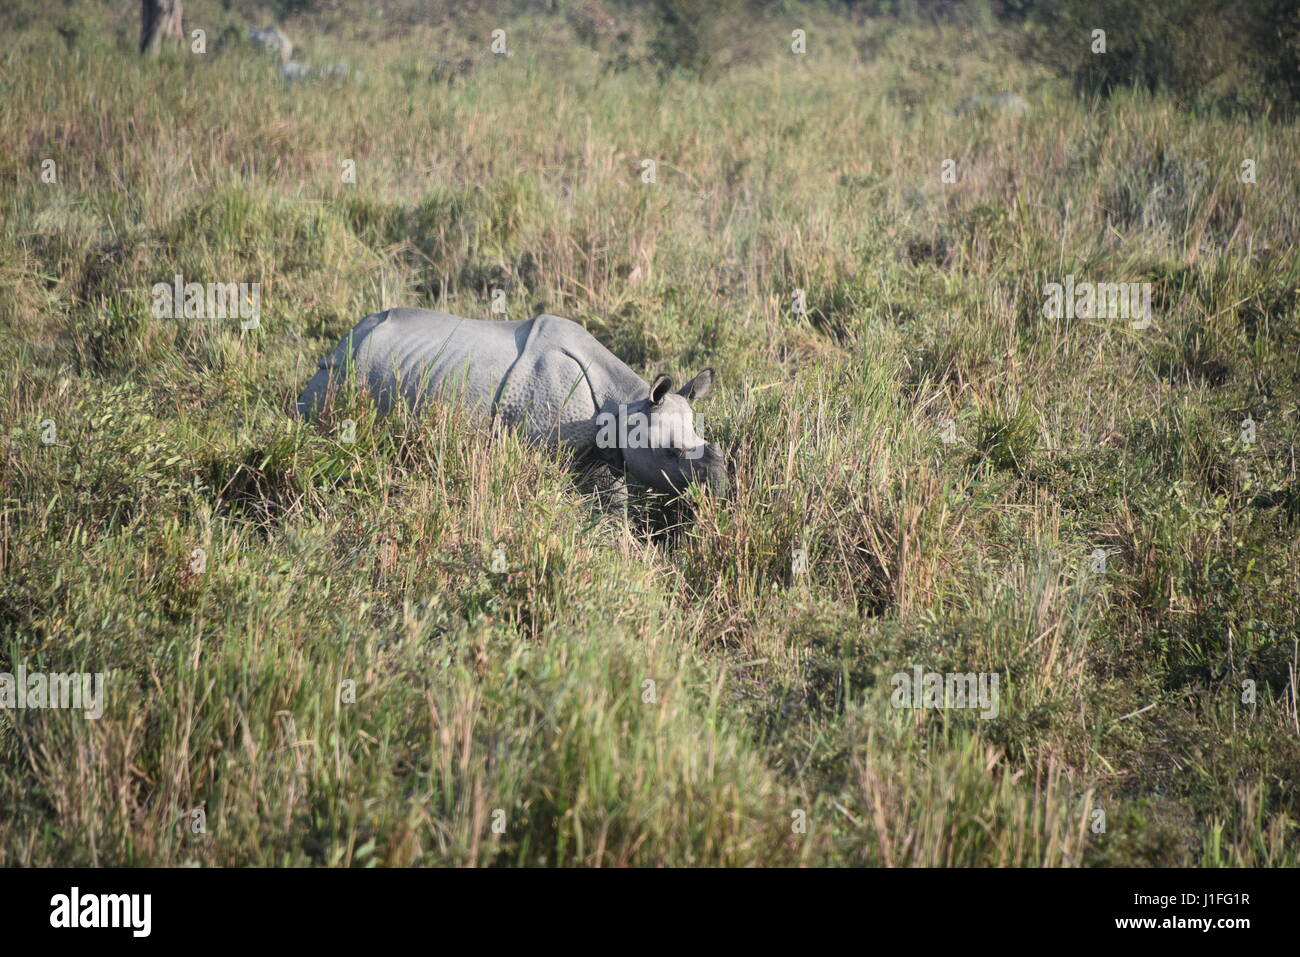 Tres rinoceronte indio en Kaziranga national parl, india. El Parque Nacional Kaziranga tiene tres cuernos hieghest número de rinocerontes en el mundo Foto de stock